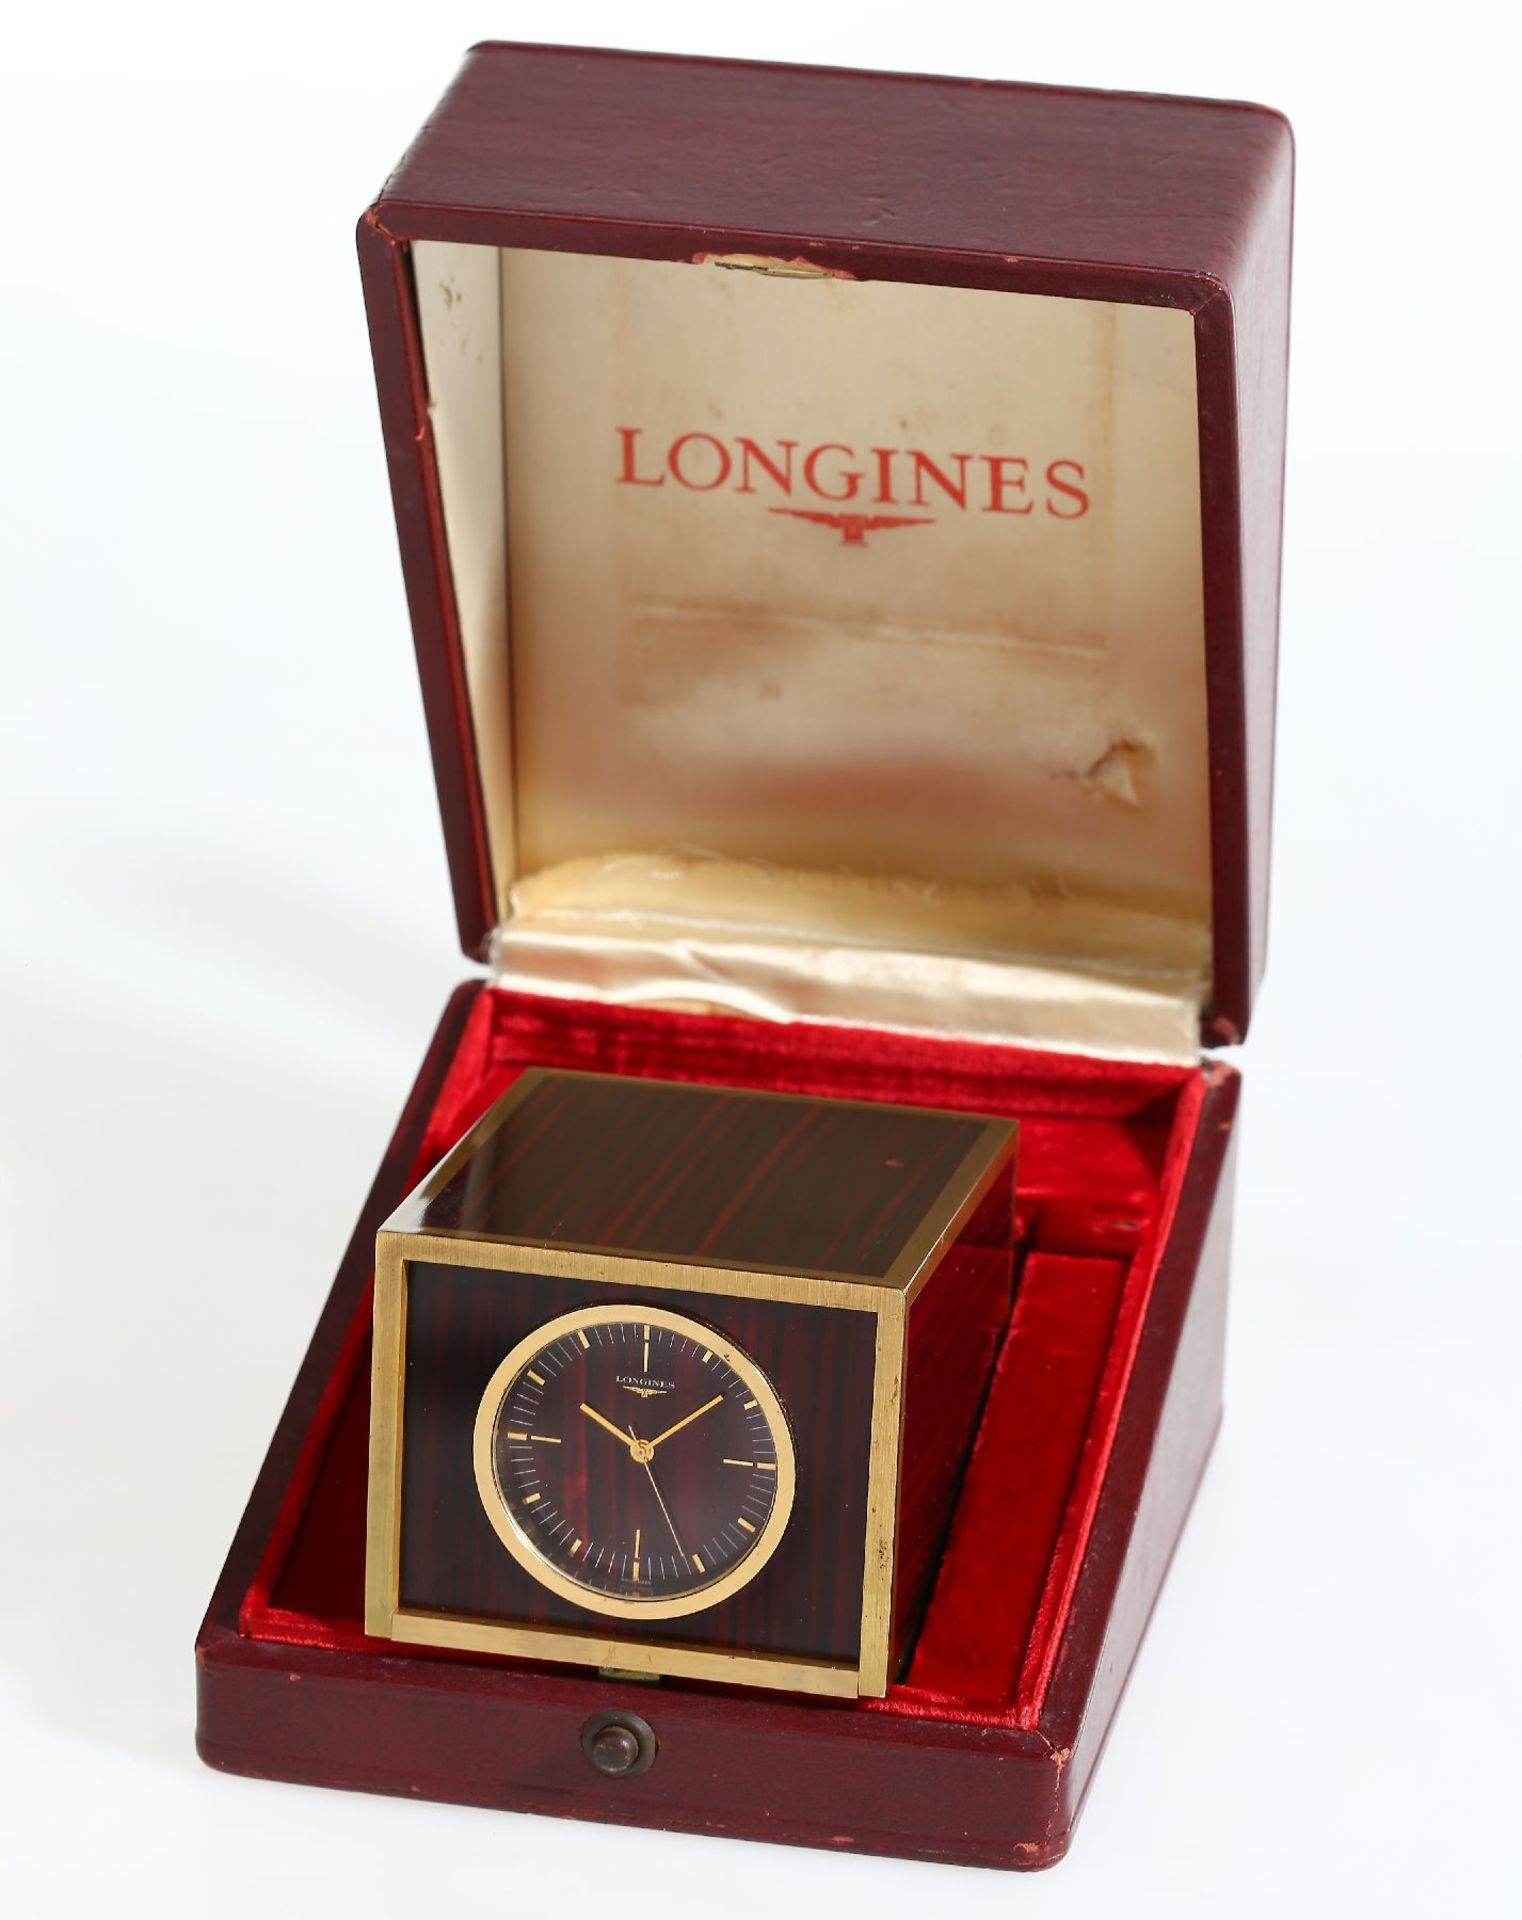 LONGINES sehr seltene Electronic Deck Watch Kal. 800 mit original Box, Schweiz um 1965, schweres